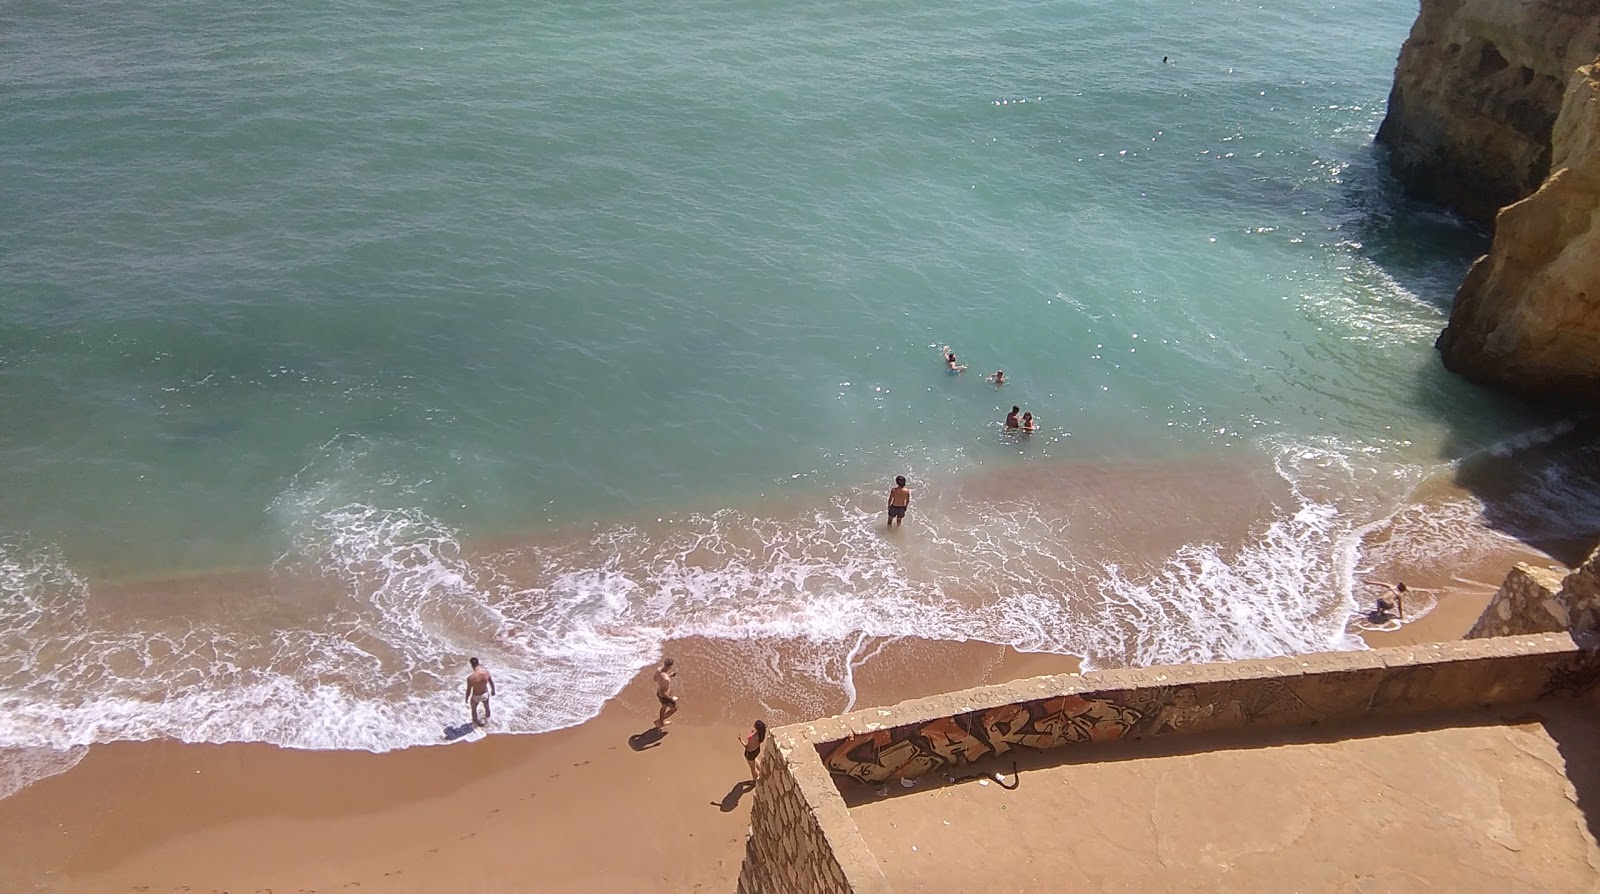 Praia do Pinhao的照片 具有非常干净级别的清洁度